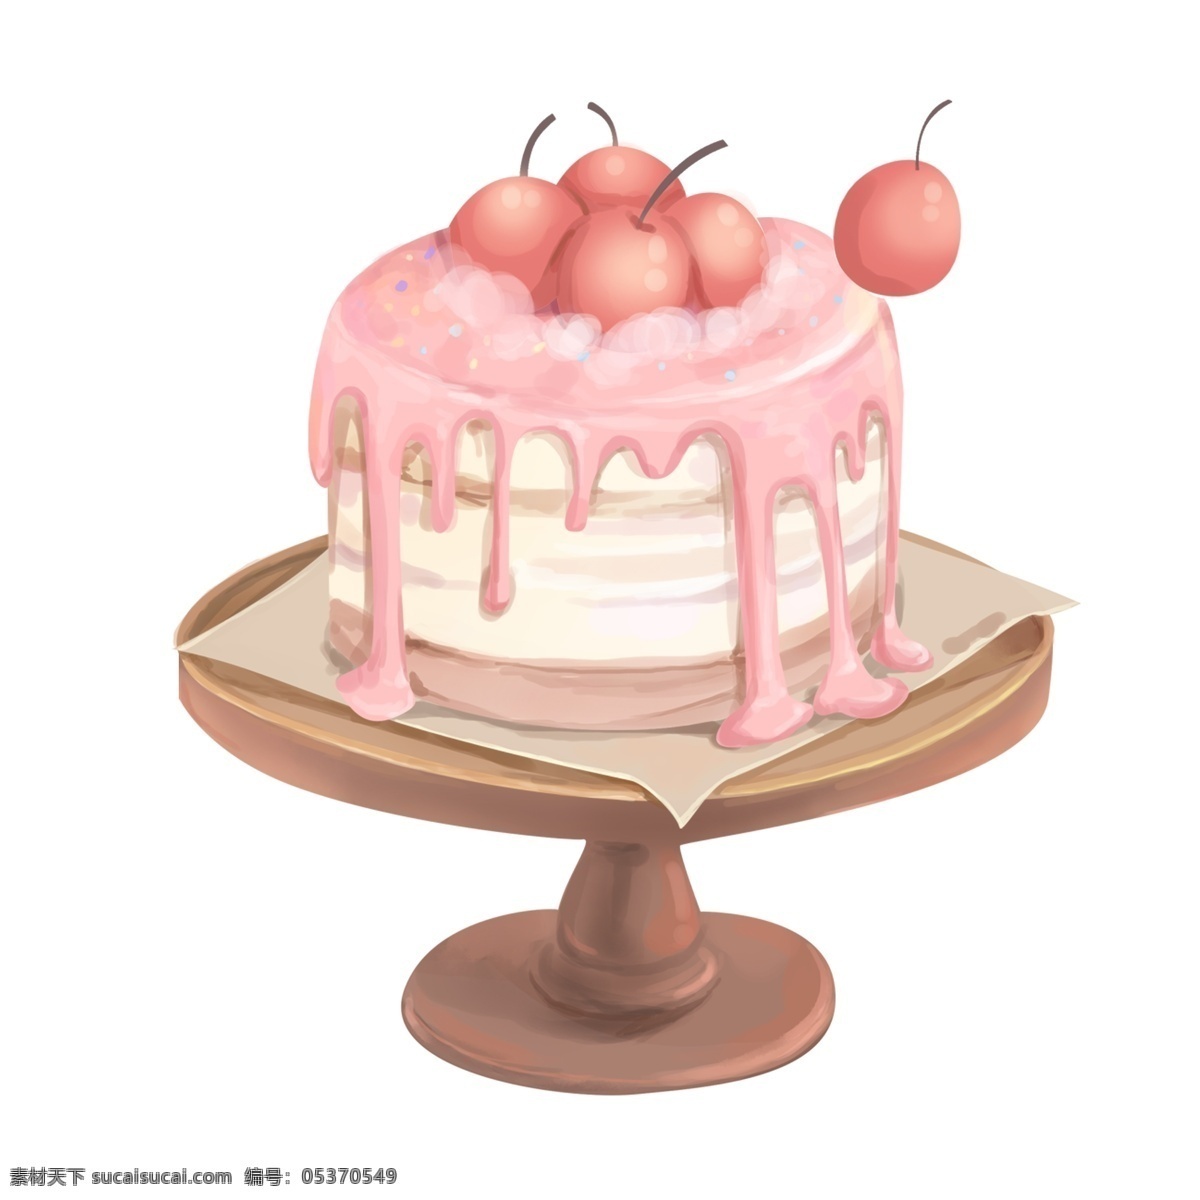 手绘 美味 水果 蛋糕 卡通 生日蛋糕 糕点 小清新 甜点 美食设计